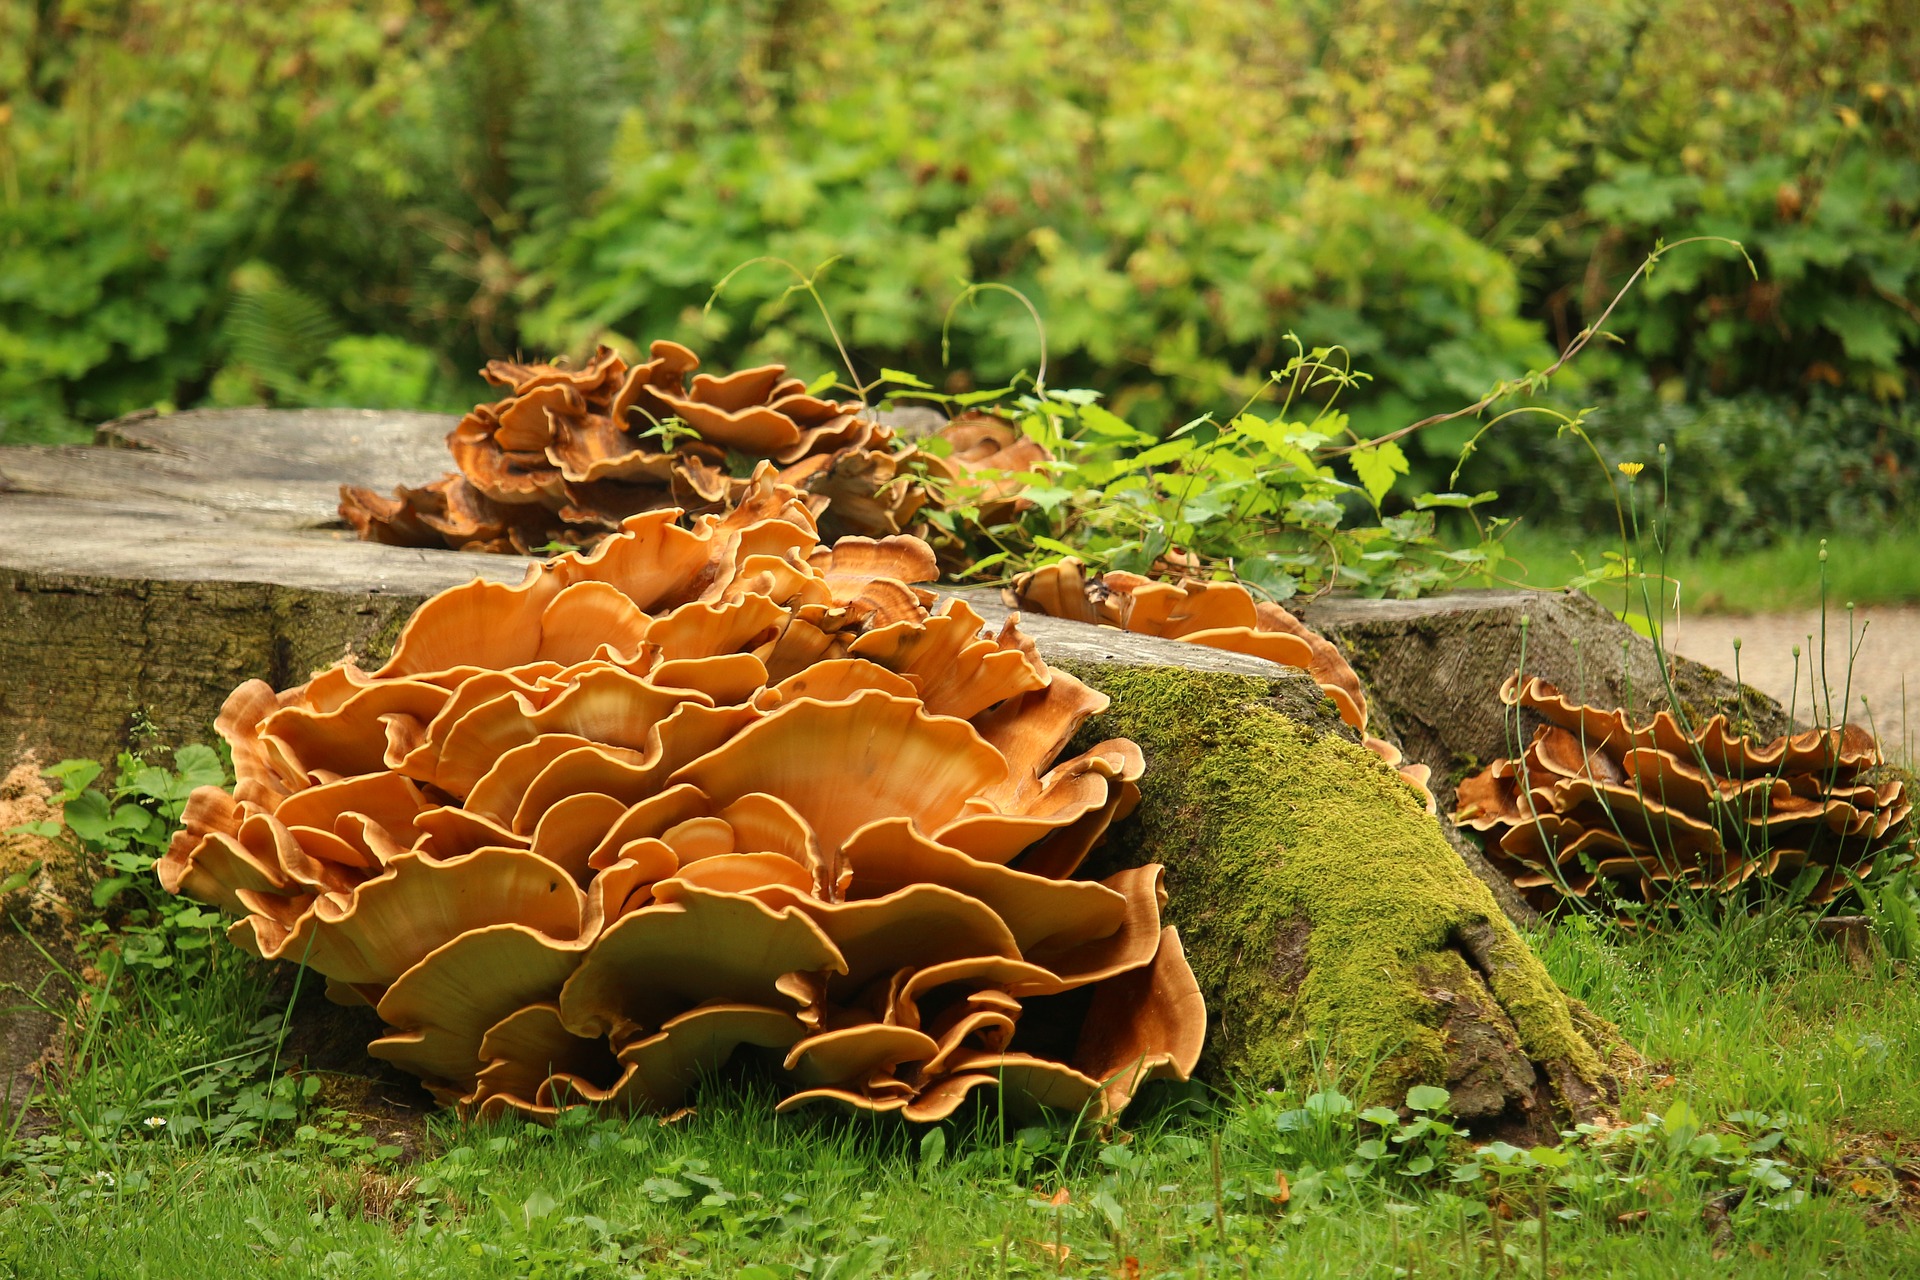 Mushrooms growing on logs